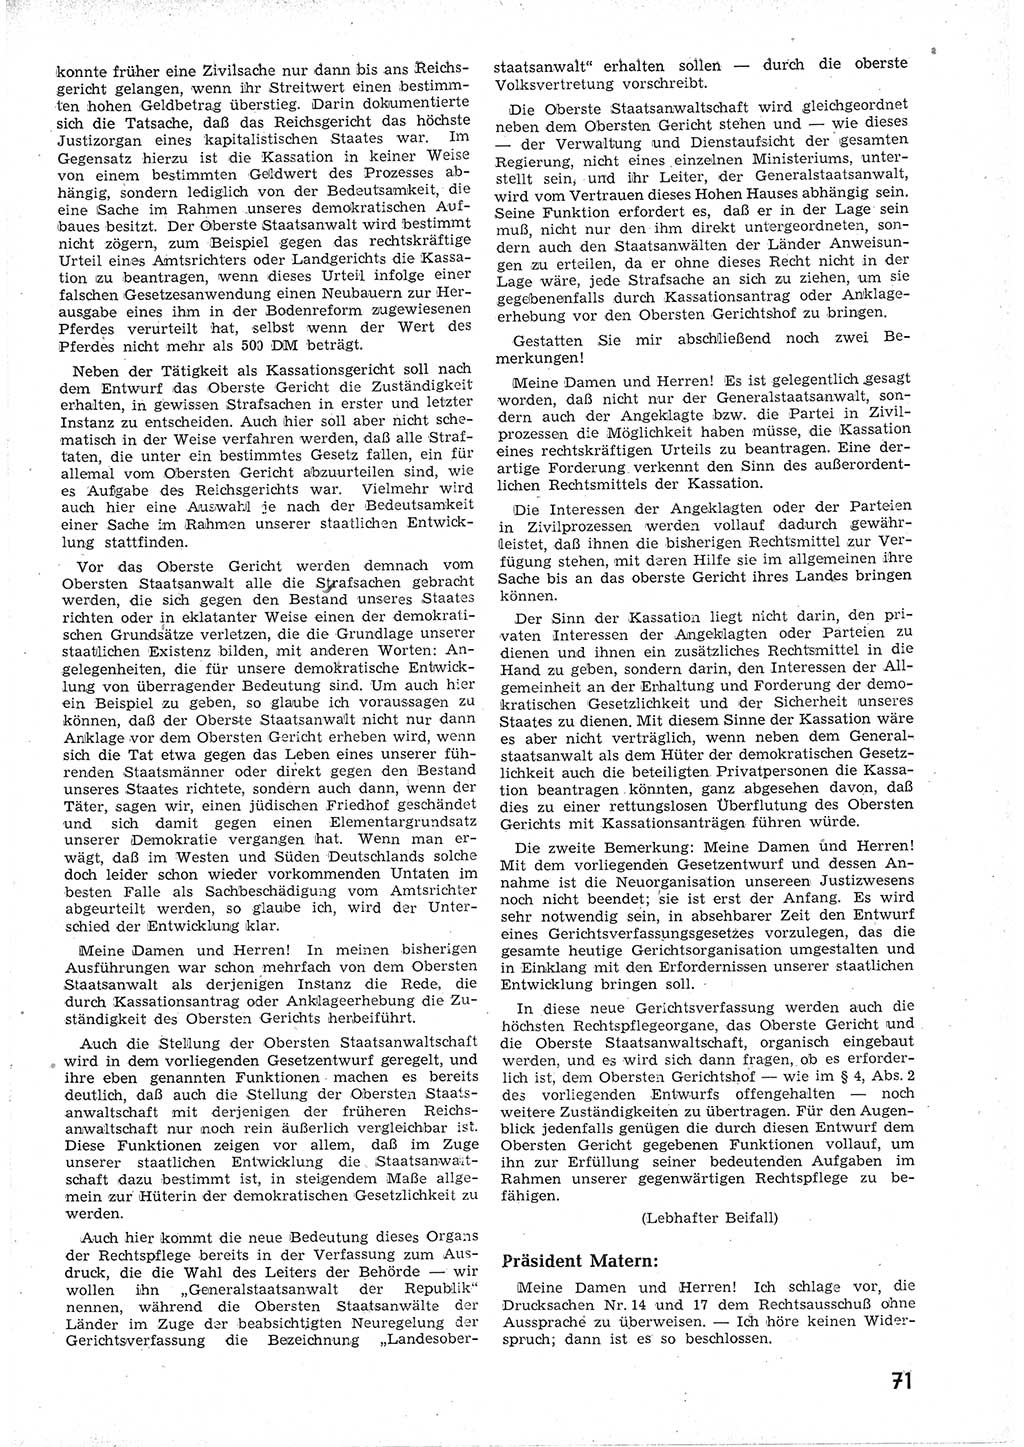 Provisorische Volkskammer (VK) der Deutschen Demokratischen Republik (DDR) 1949-1950, Dokument 83 (Prov. VK DDR 1949-1950, Dok. 83)